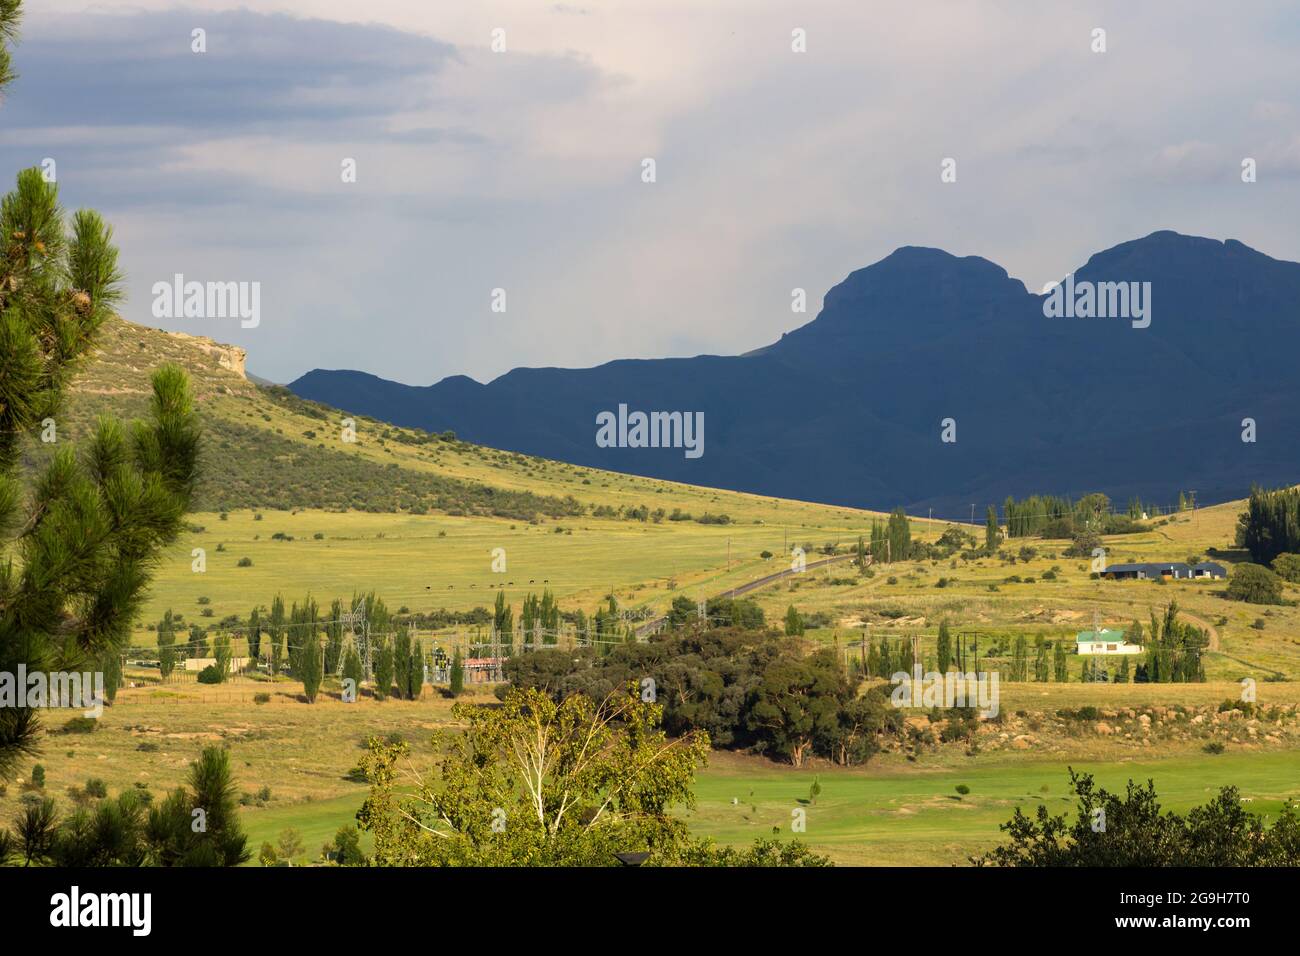 Vista nel tardo pomeriggio sulla periferia di Clarens, nella provincia dello Stato libero del Sud Africa, all'ombra del Drakensberg Foto Stock